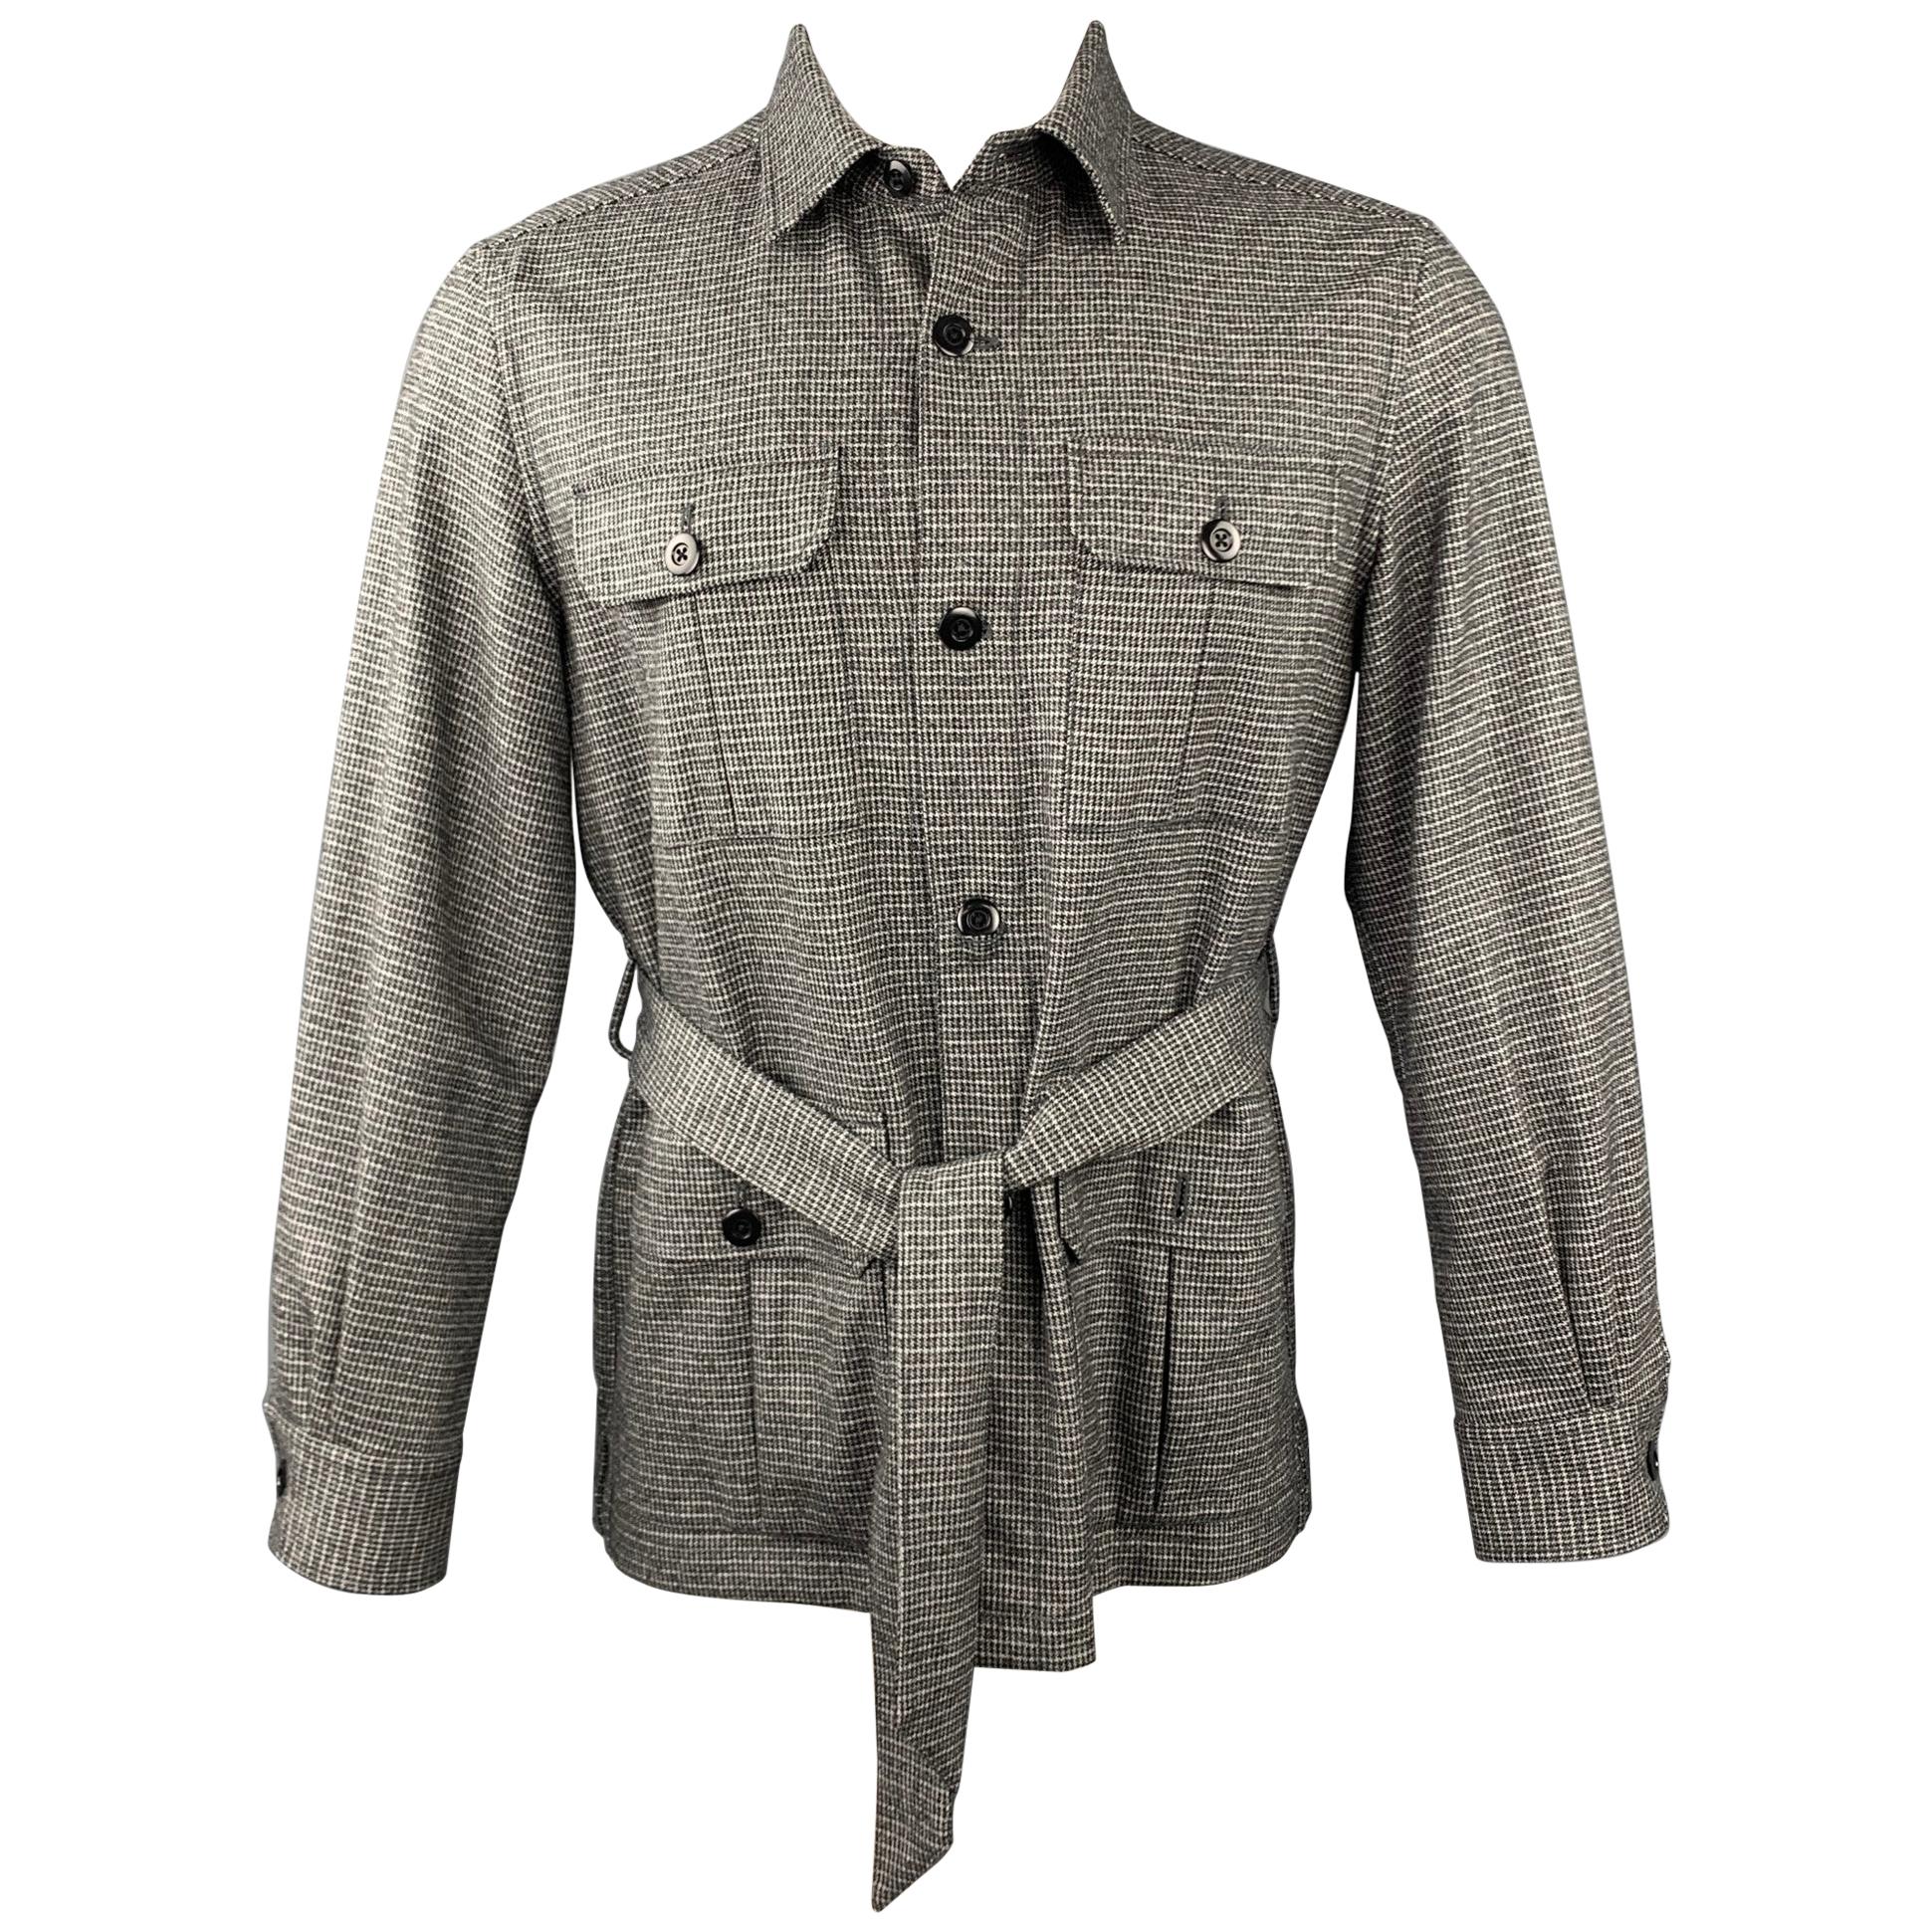 ESTNATION Size M Grey Houndstooth Wool Blend Buttoned Jacket